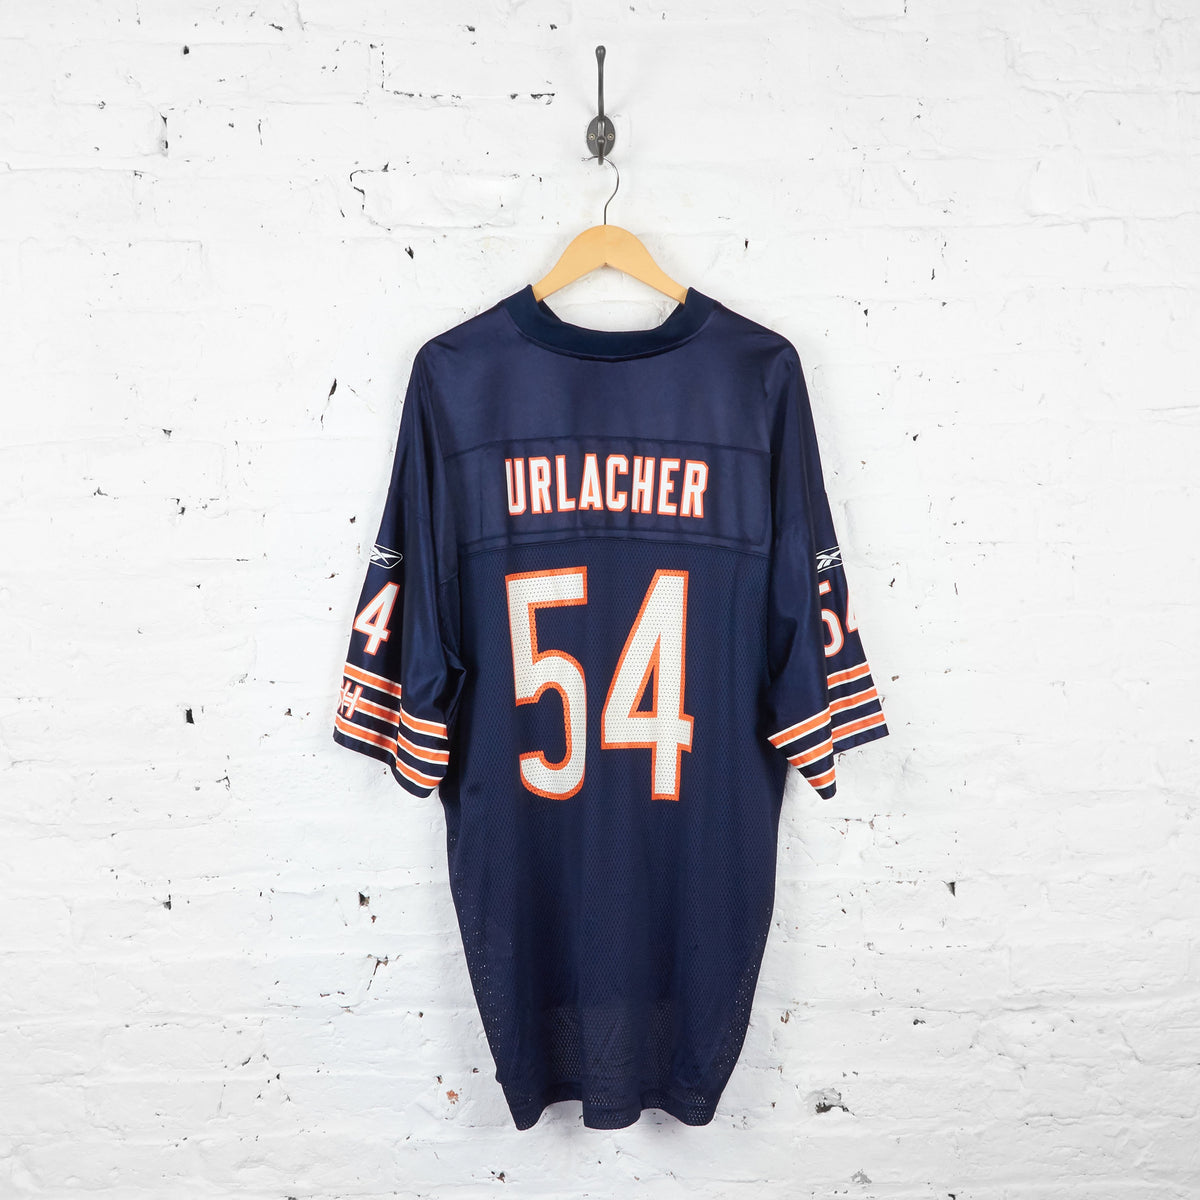 Chicago Bears Urlacher American Football NFL Jersey - Blue - XXL – Headlock